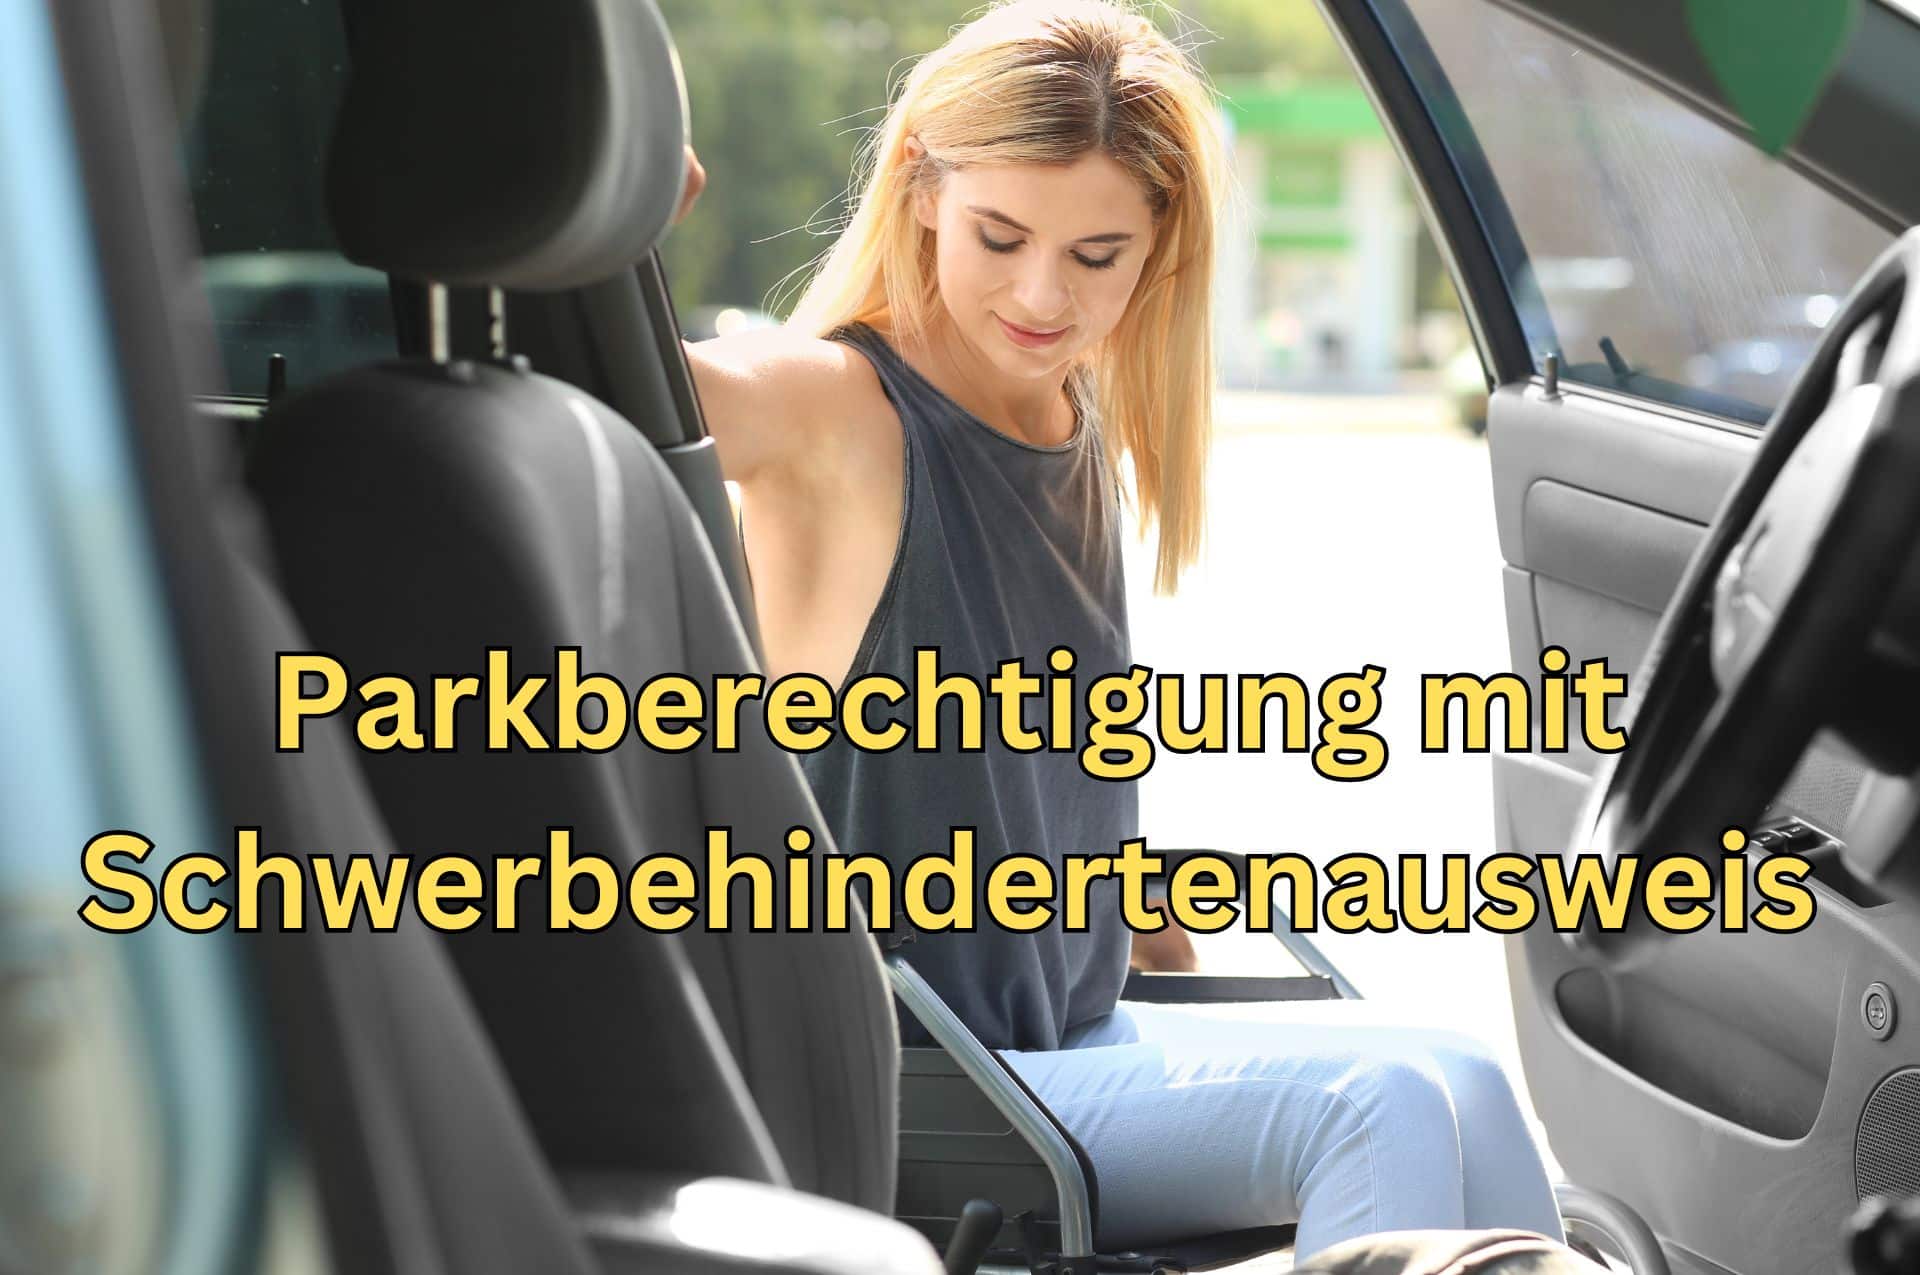 Parkberechtigung mit Schwerbehindertenausweis